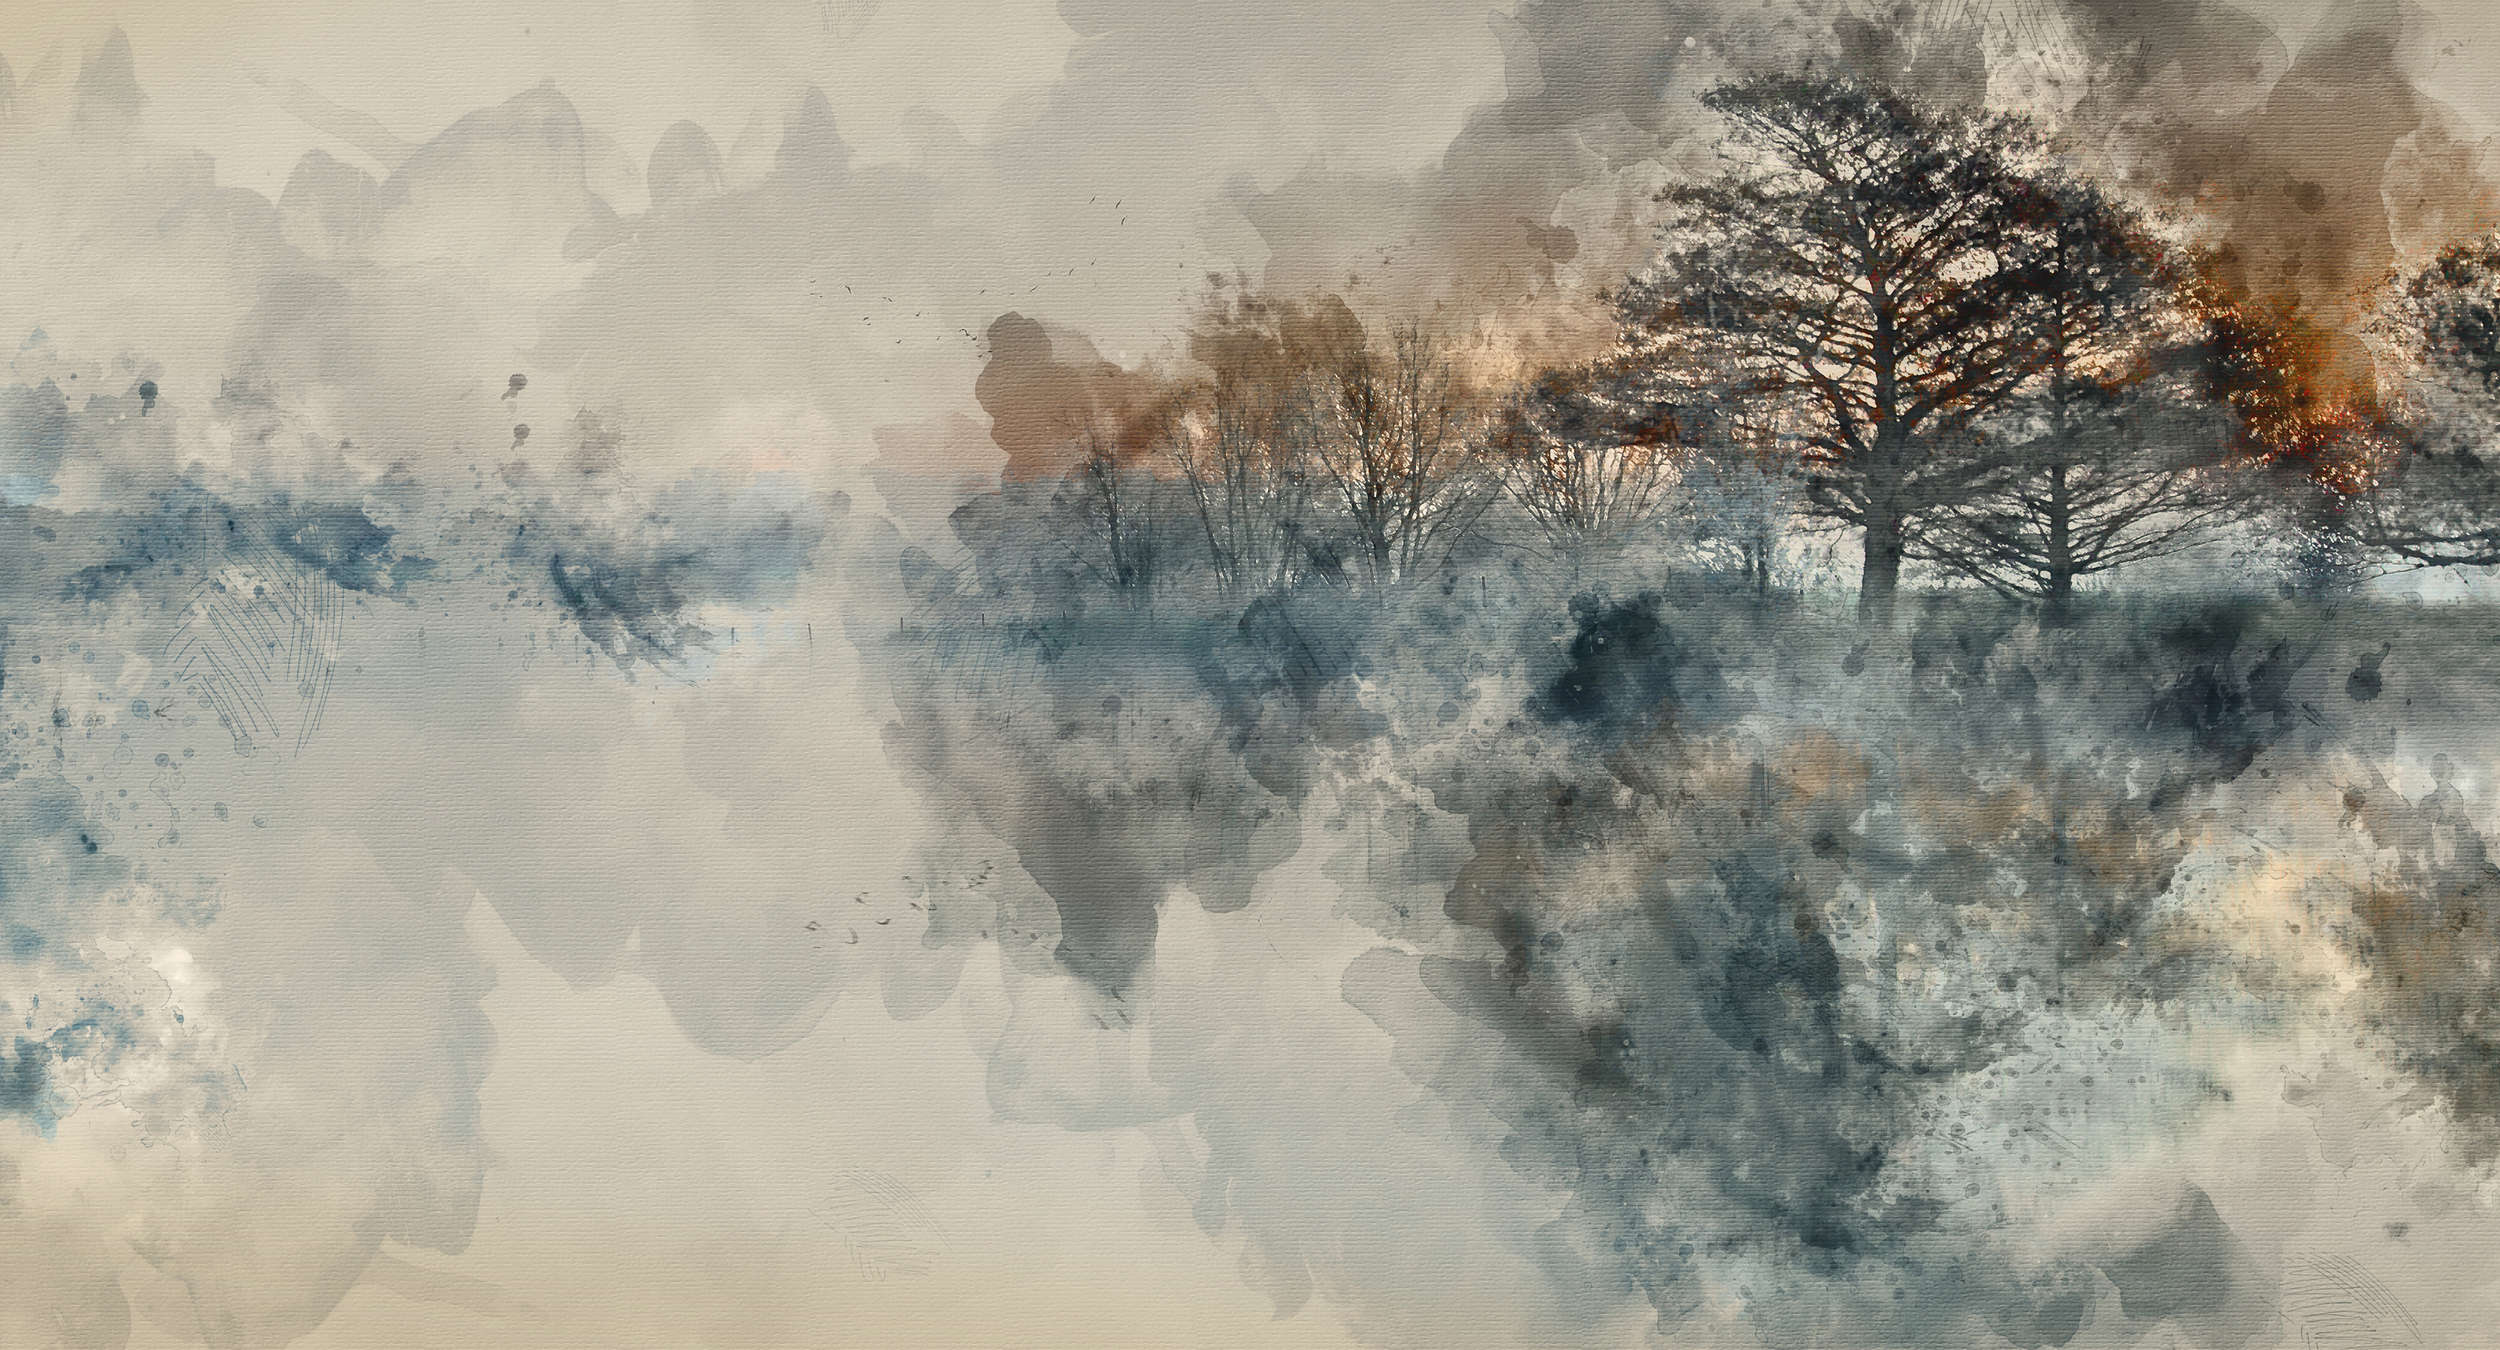             Papel pintado Lago de otoño estilo acuarela - Azul, Beige, Gris - Tejido sin tejer liso perlado
        